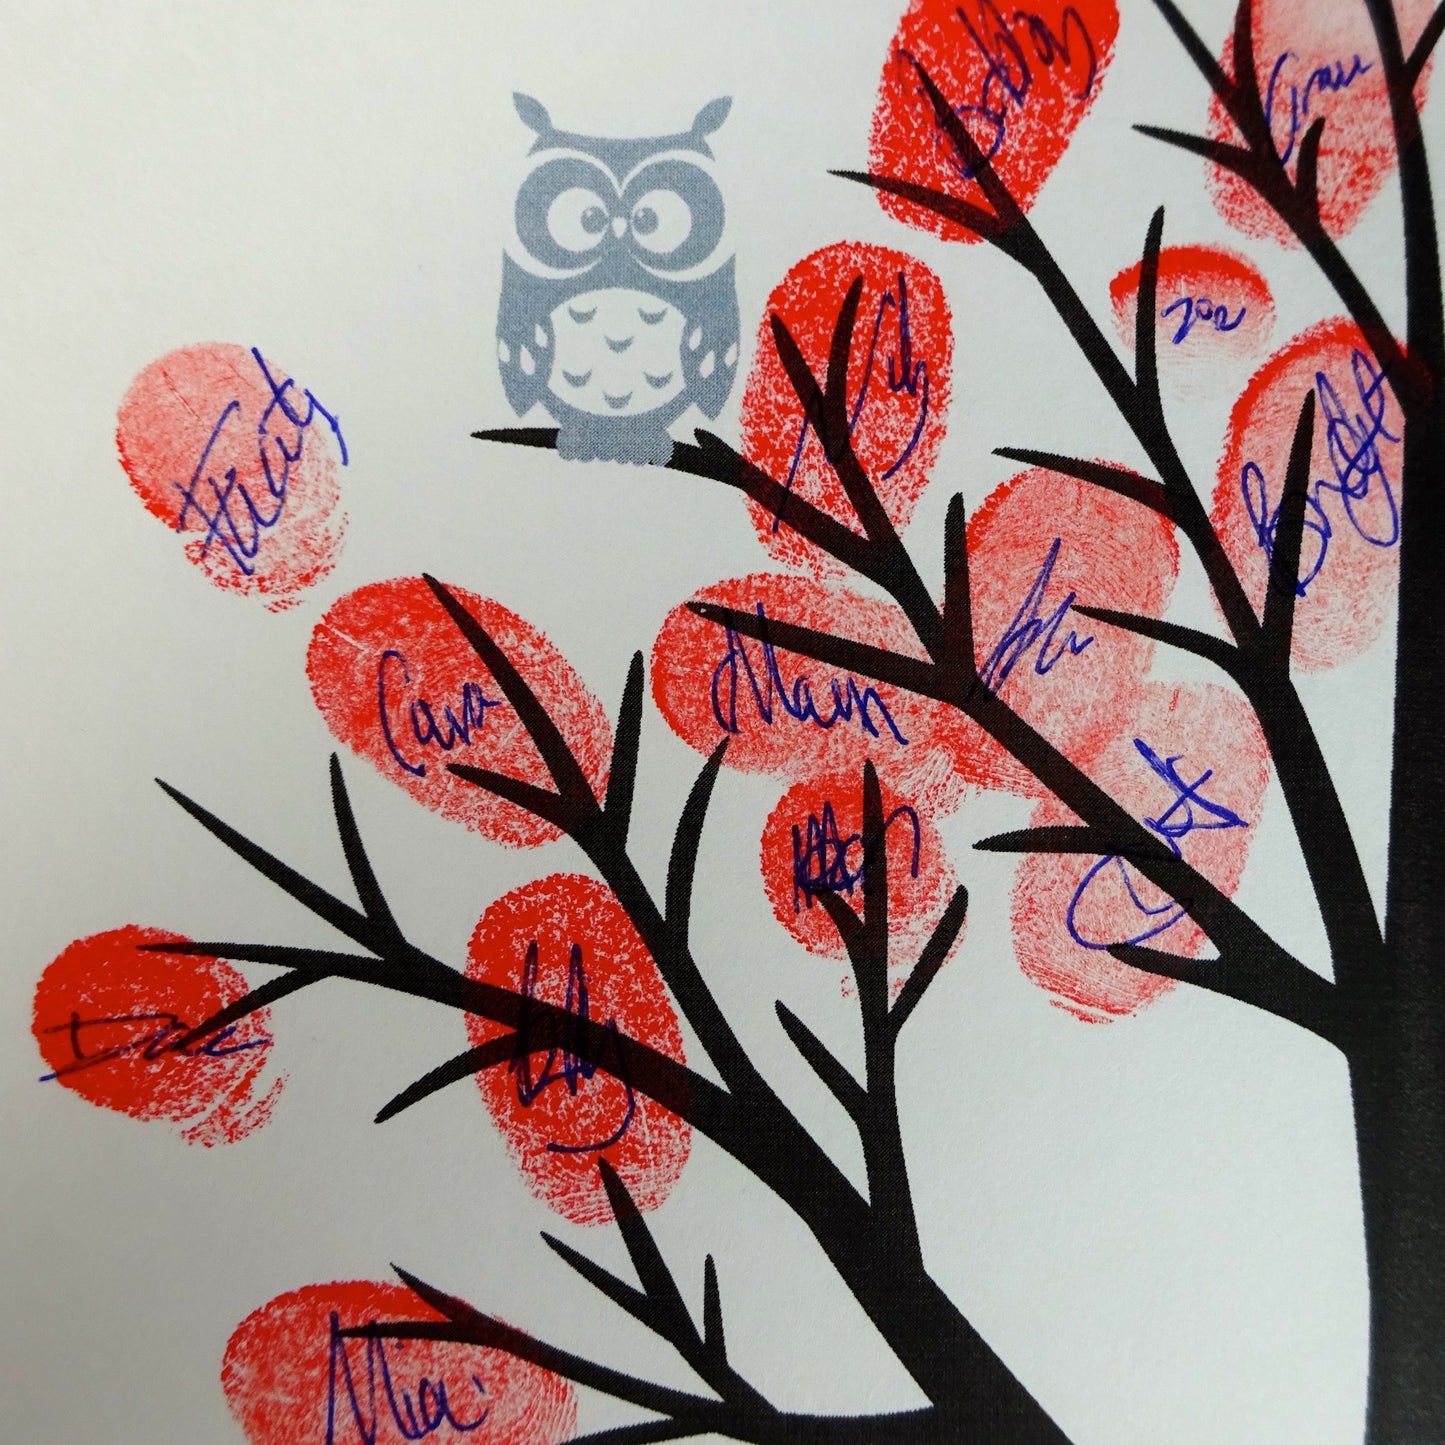 Fingerprint tree / fingerprint leaves, grey owl